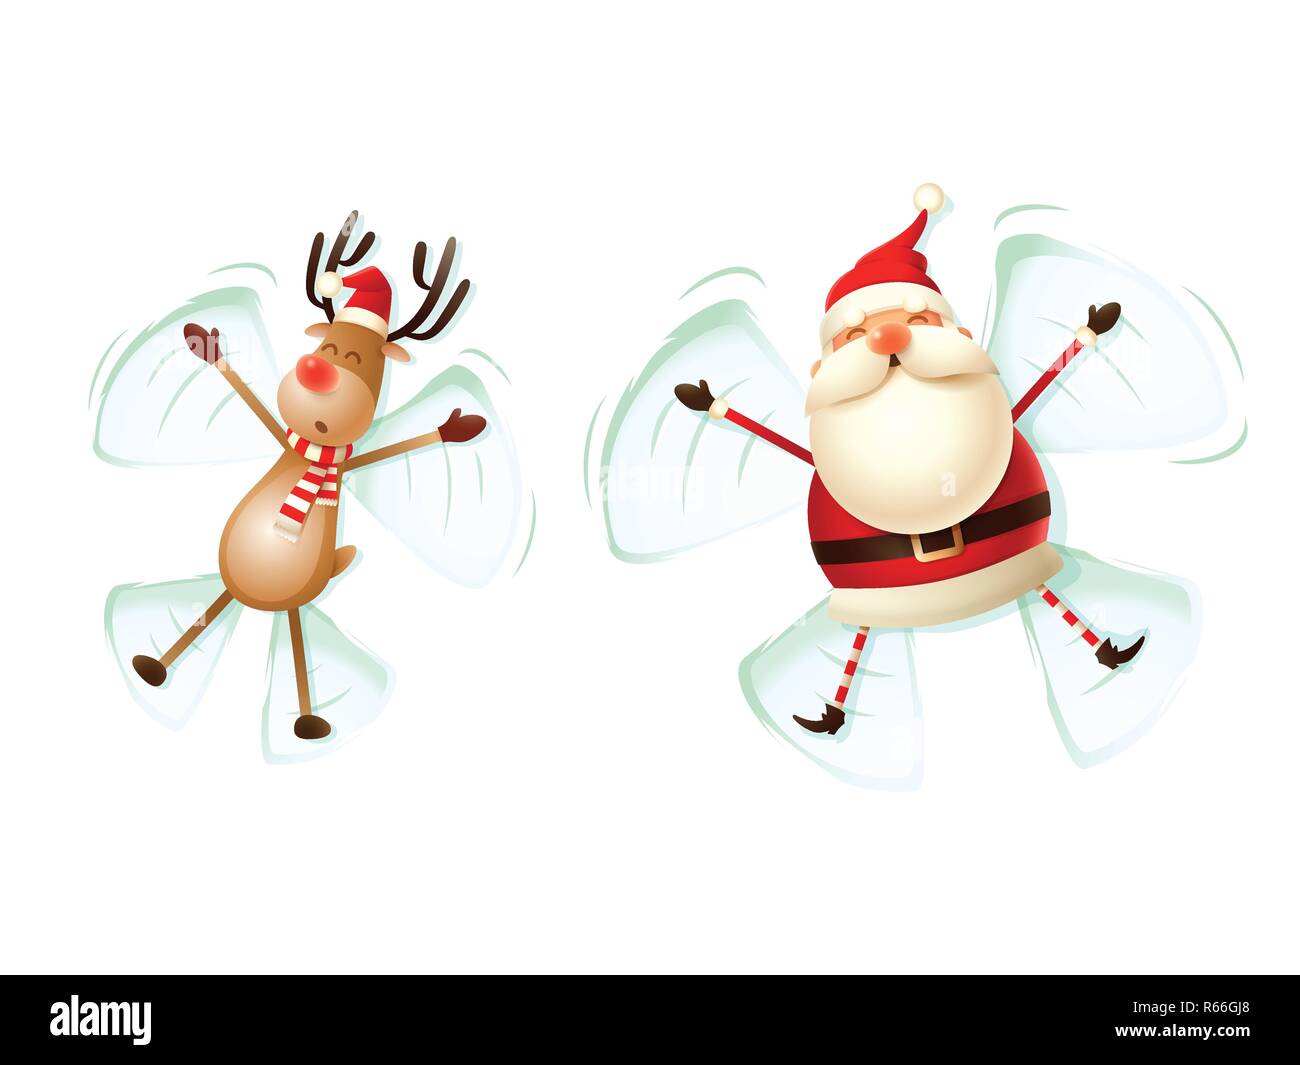 Weihnachtsmann und Rentier, Engel im Schnee Vector Illustration auf weißem Hintergrund Stock Vektor